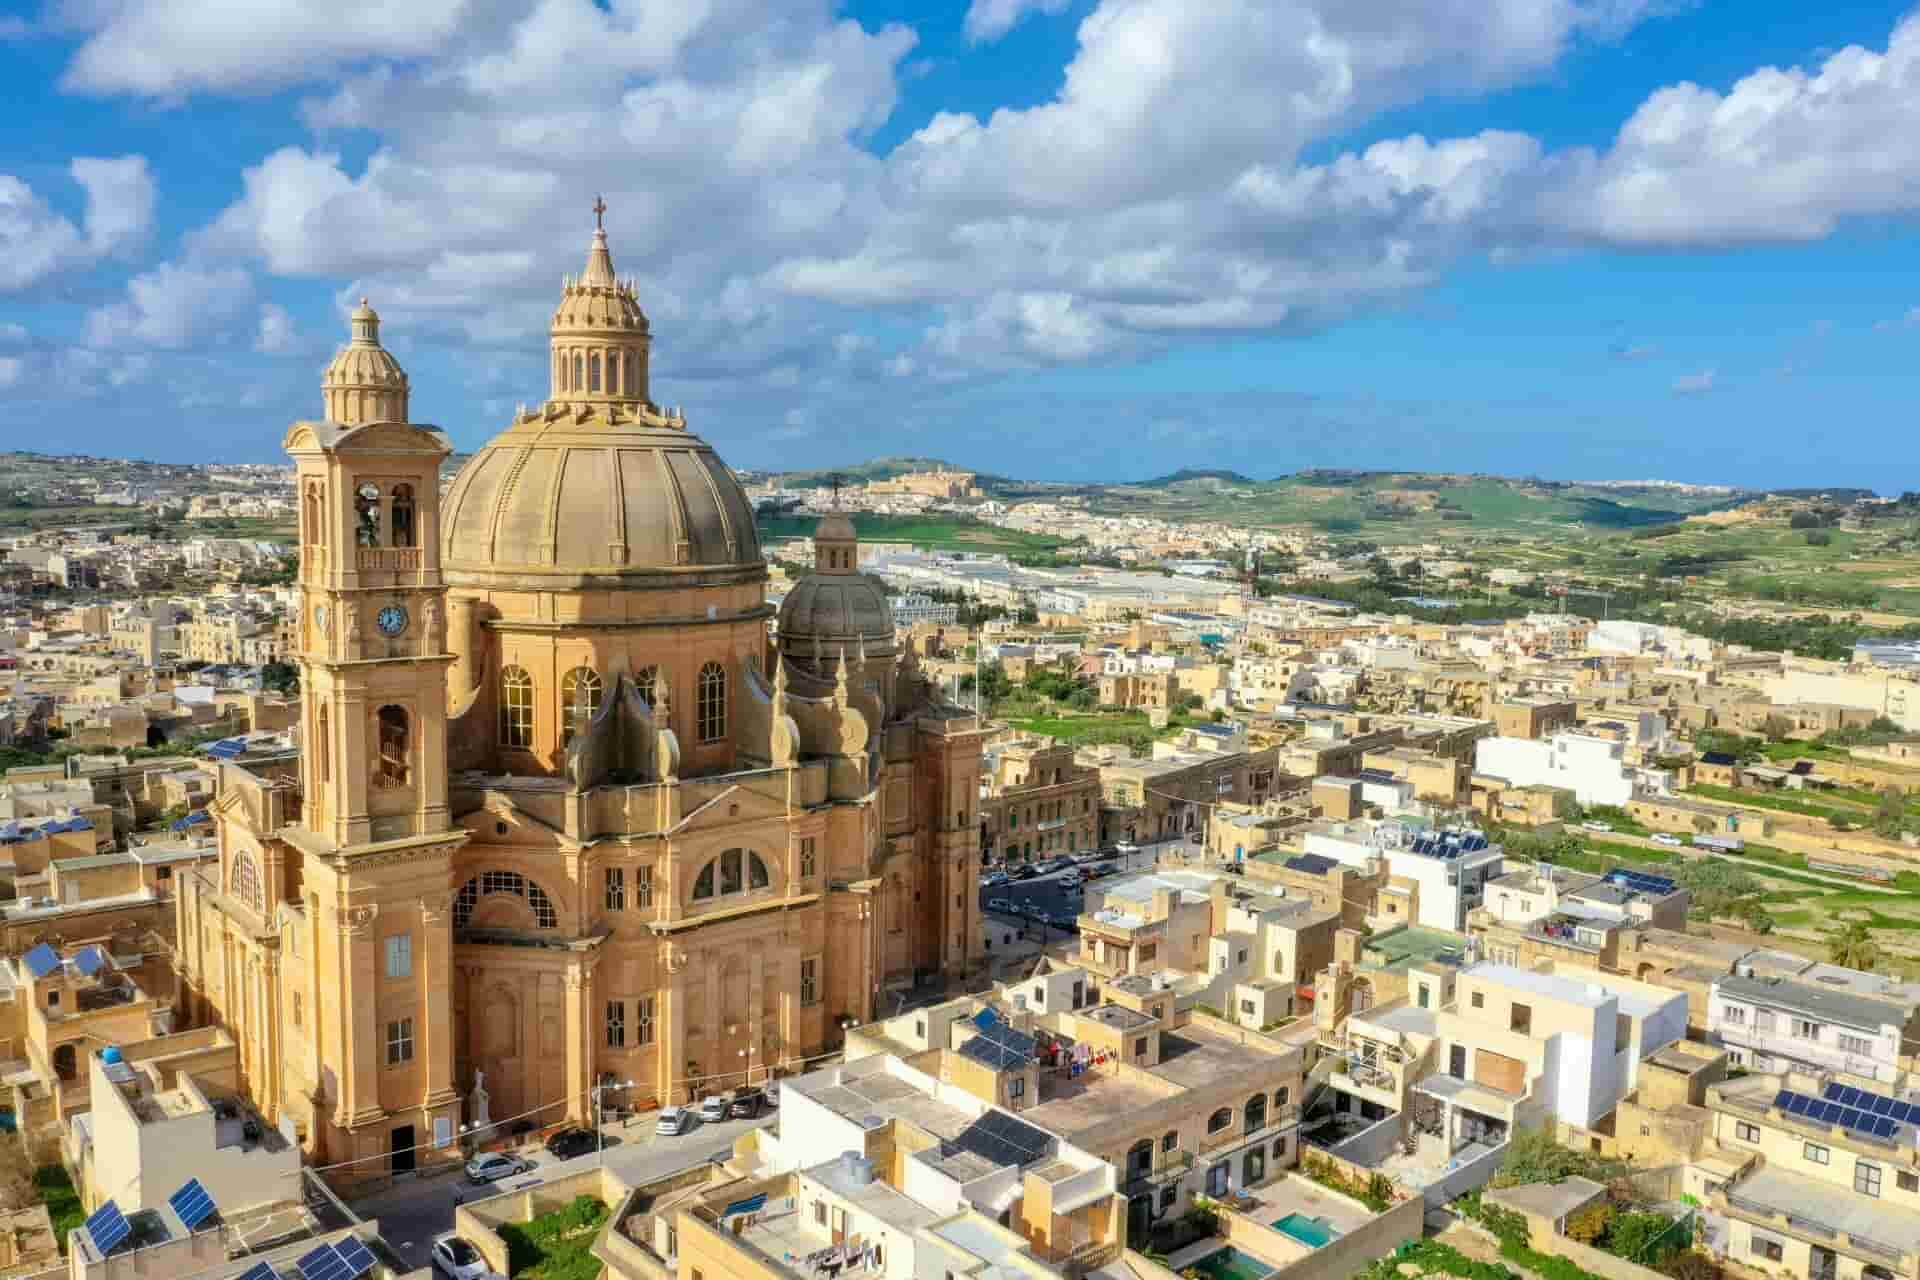 Bật mí] những lý do khiến Malta là điểm đến đầu tư định cư hấp dẫn cho người nước ngoài - Portico and Bridge